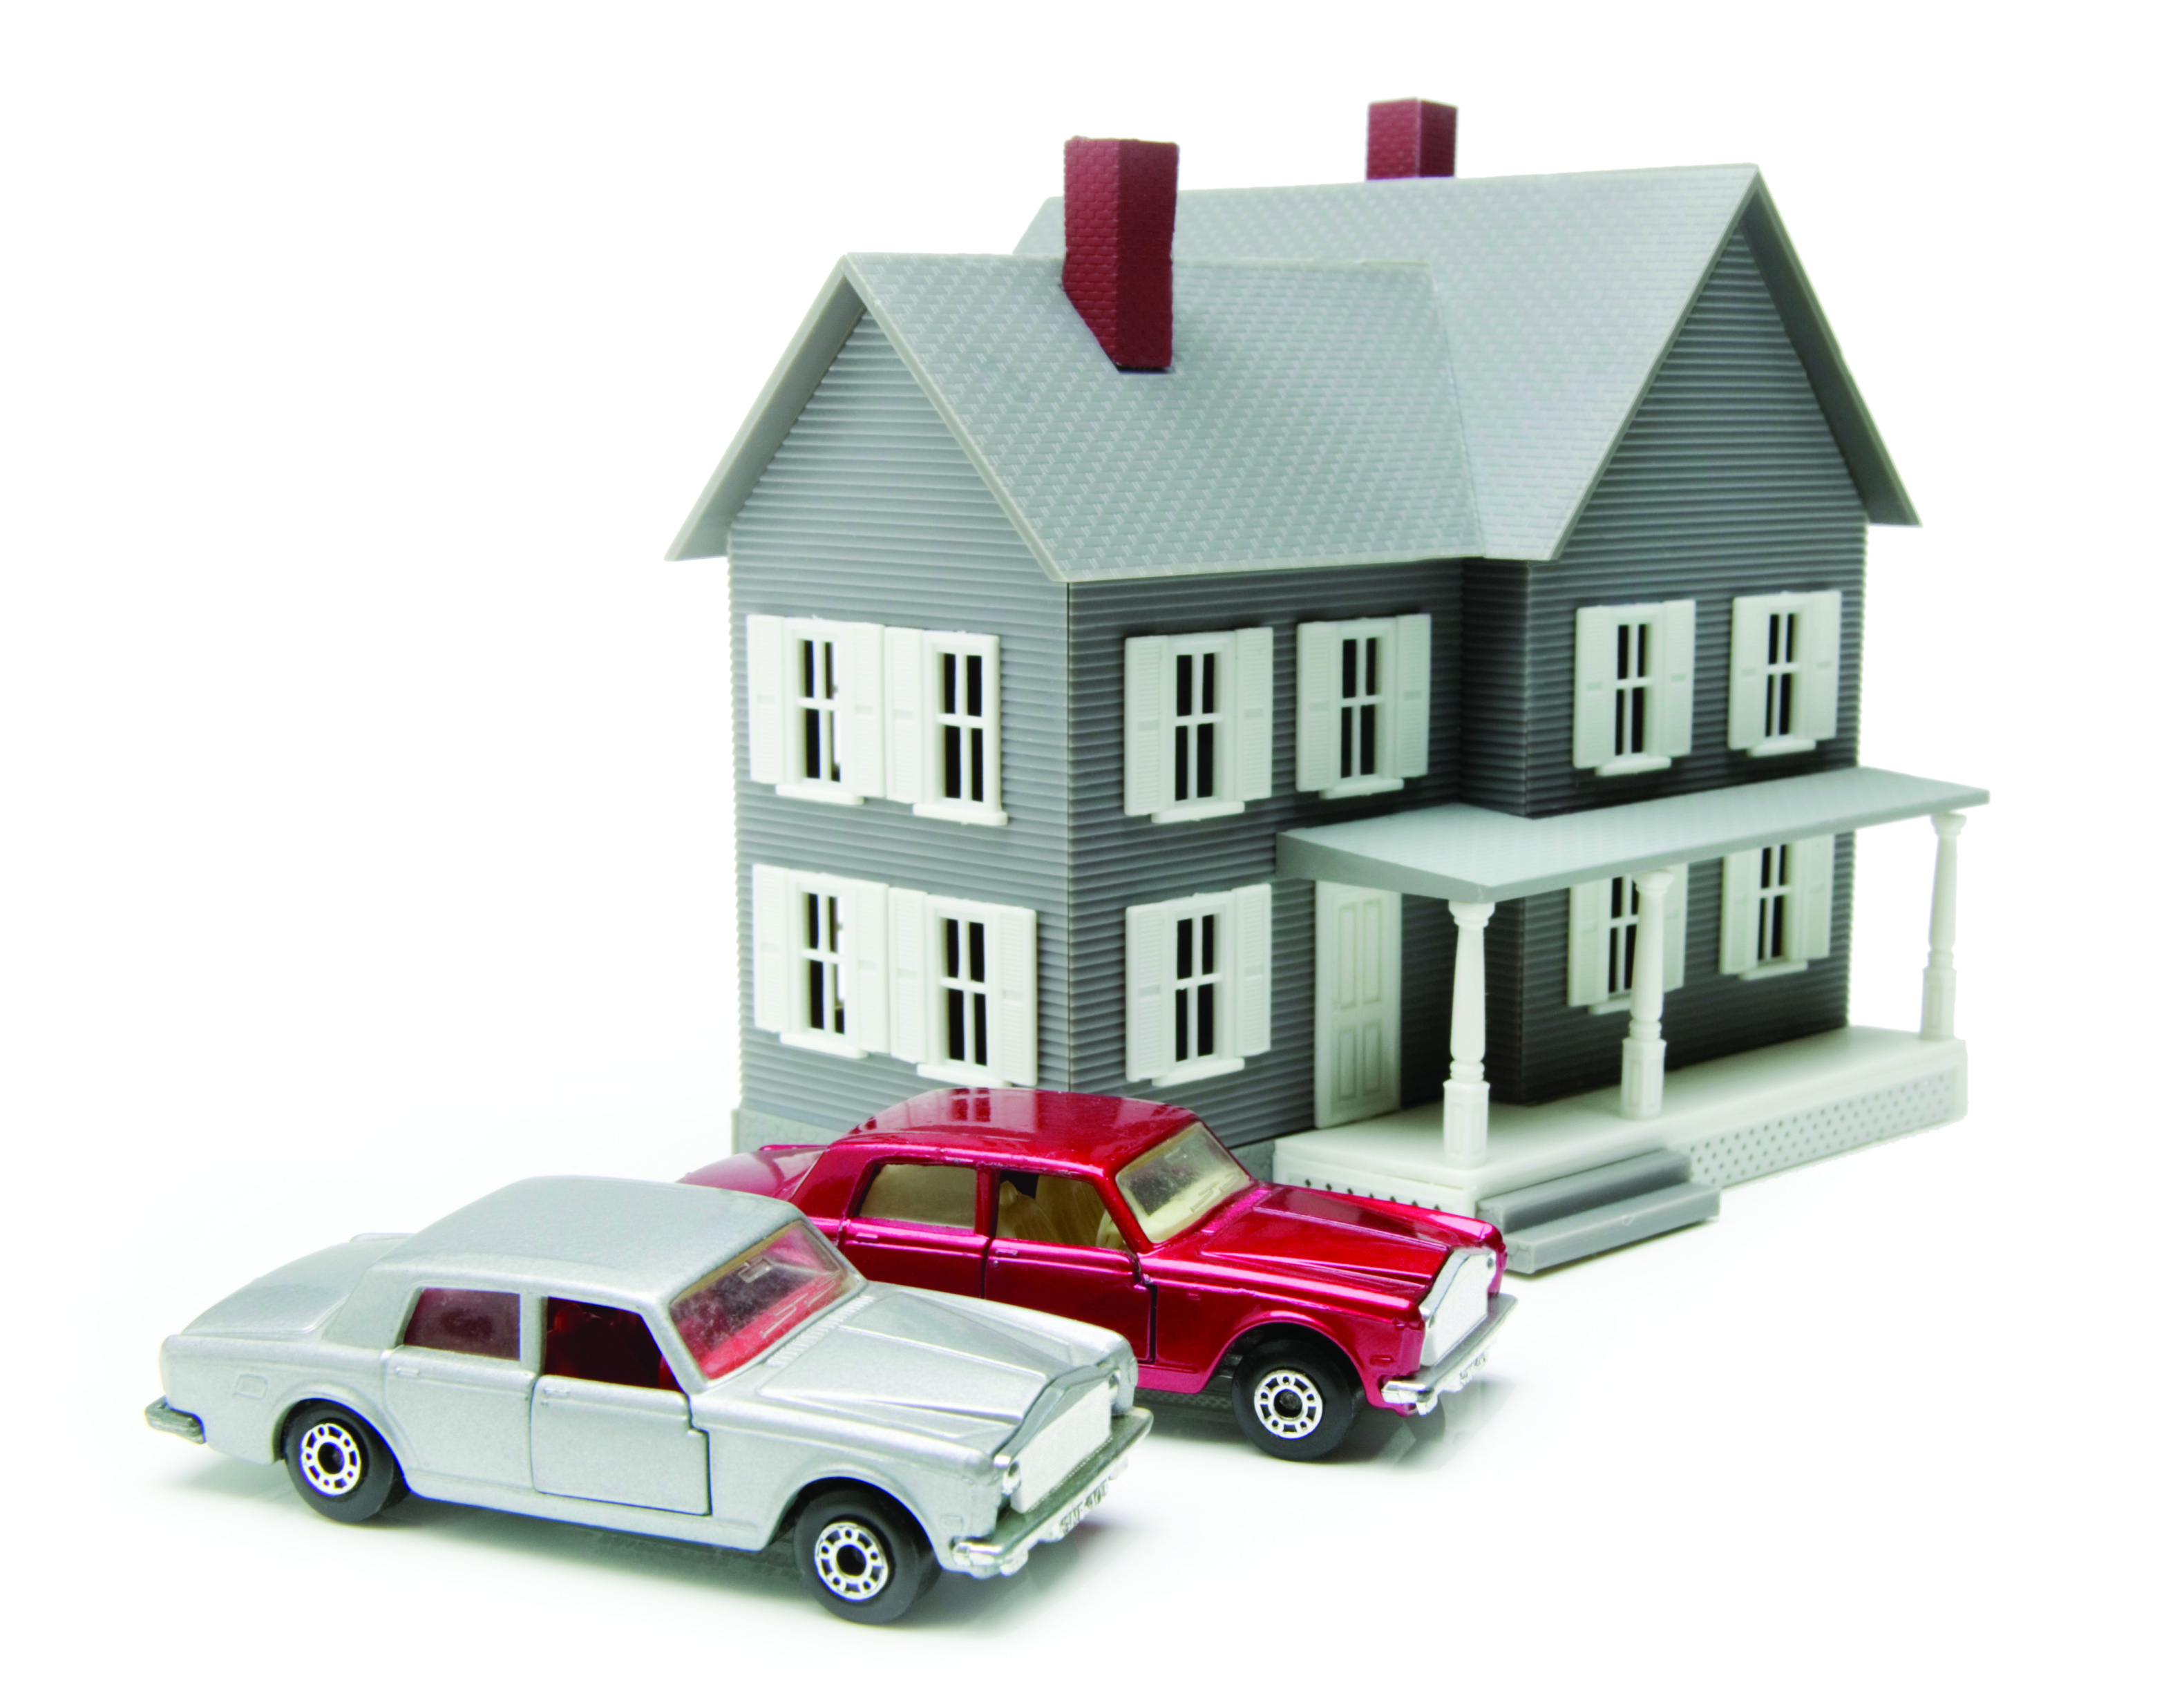 Сооружения движимое имущество. Недвижимость и автомобиль. Автомобиль это недвижимое имущество. Оценка имущества движимого и недвижимого имущества. Имущество недвижимость транспортные средства.